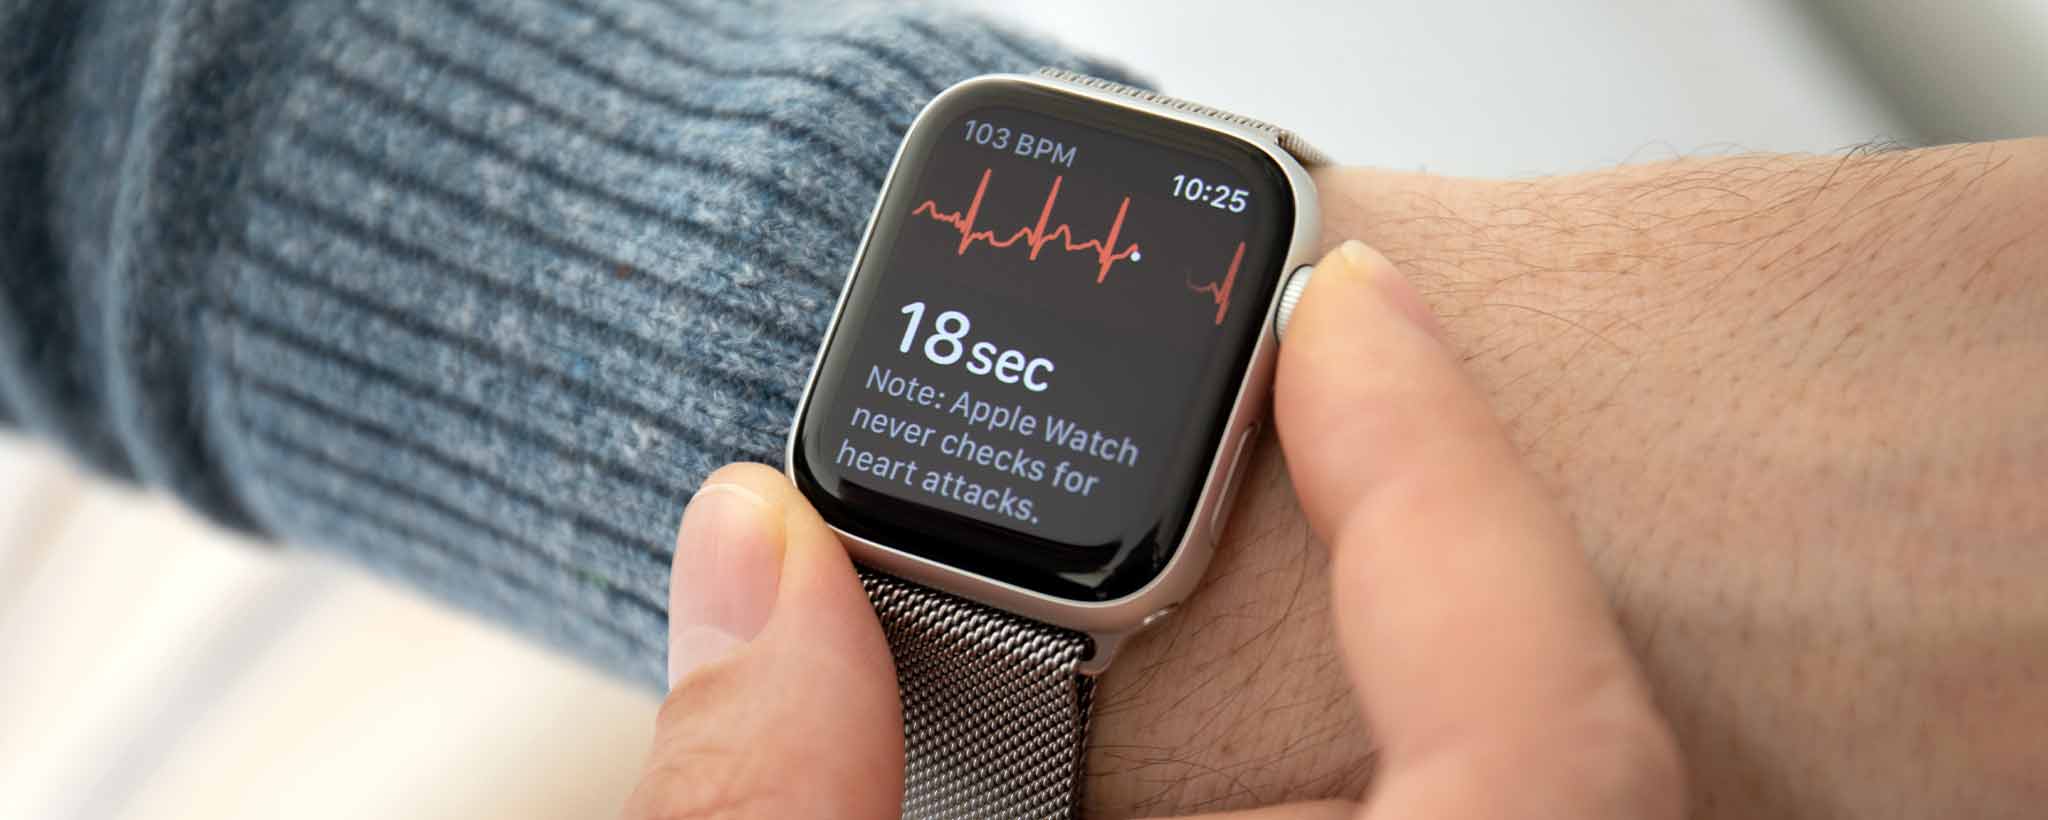 'Apple Watch heart monitor'